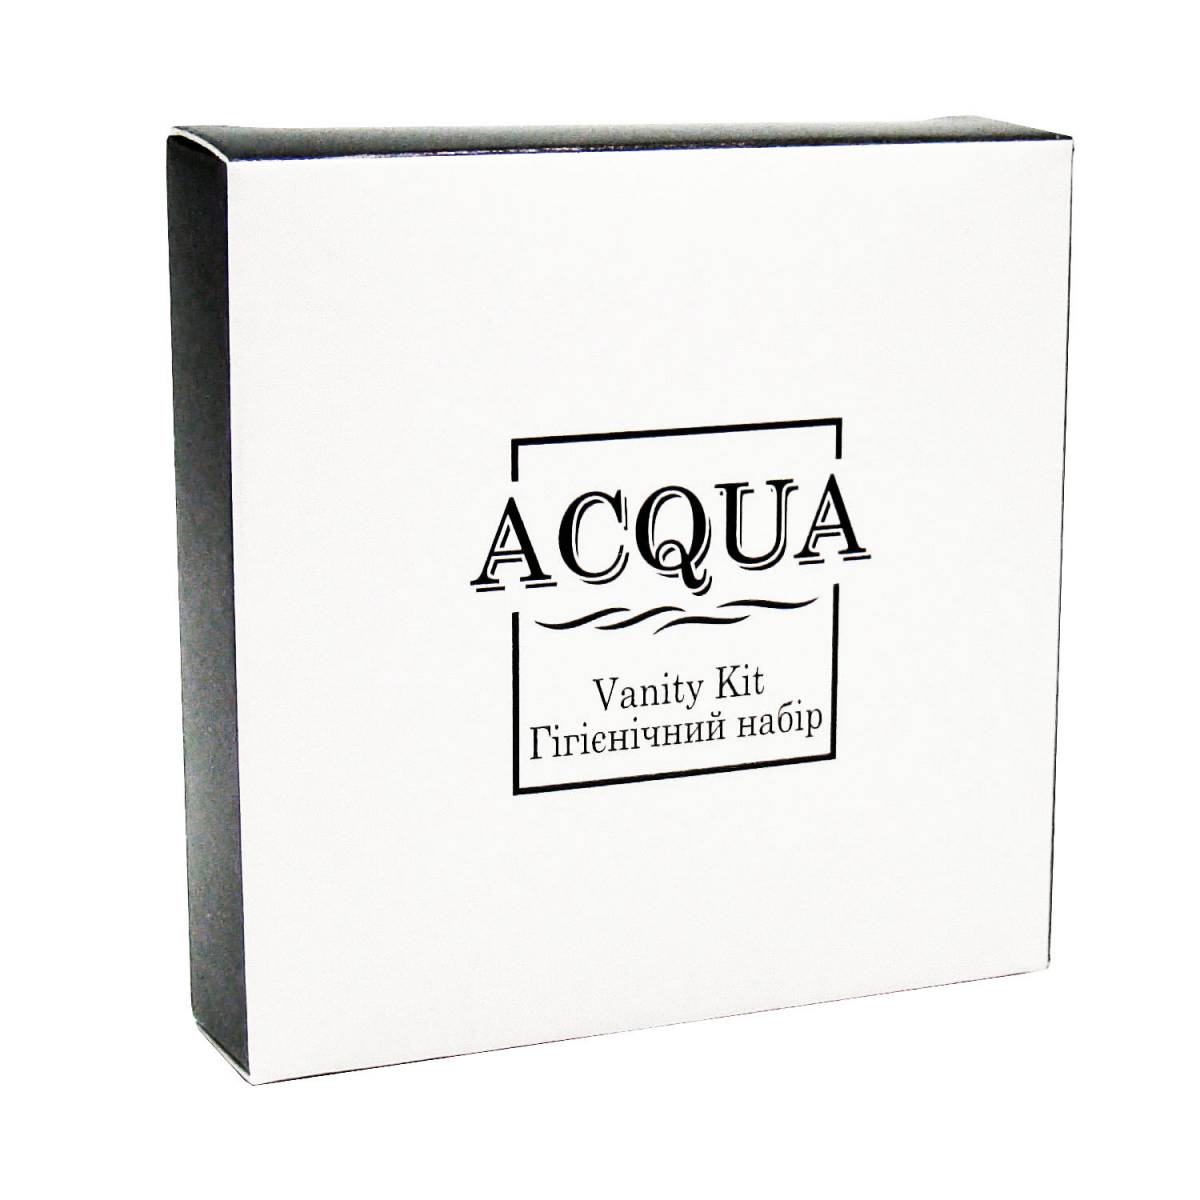 Косметический набор ACQUA для гостиниц, в картонной коробочке Q-VK HSG